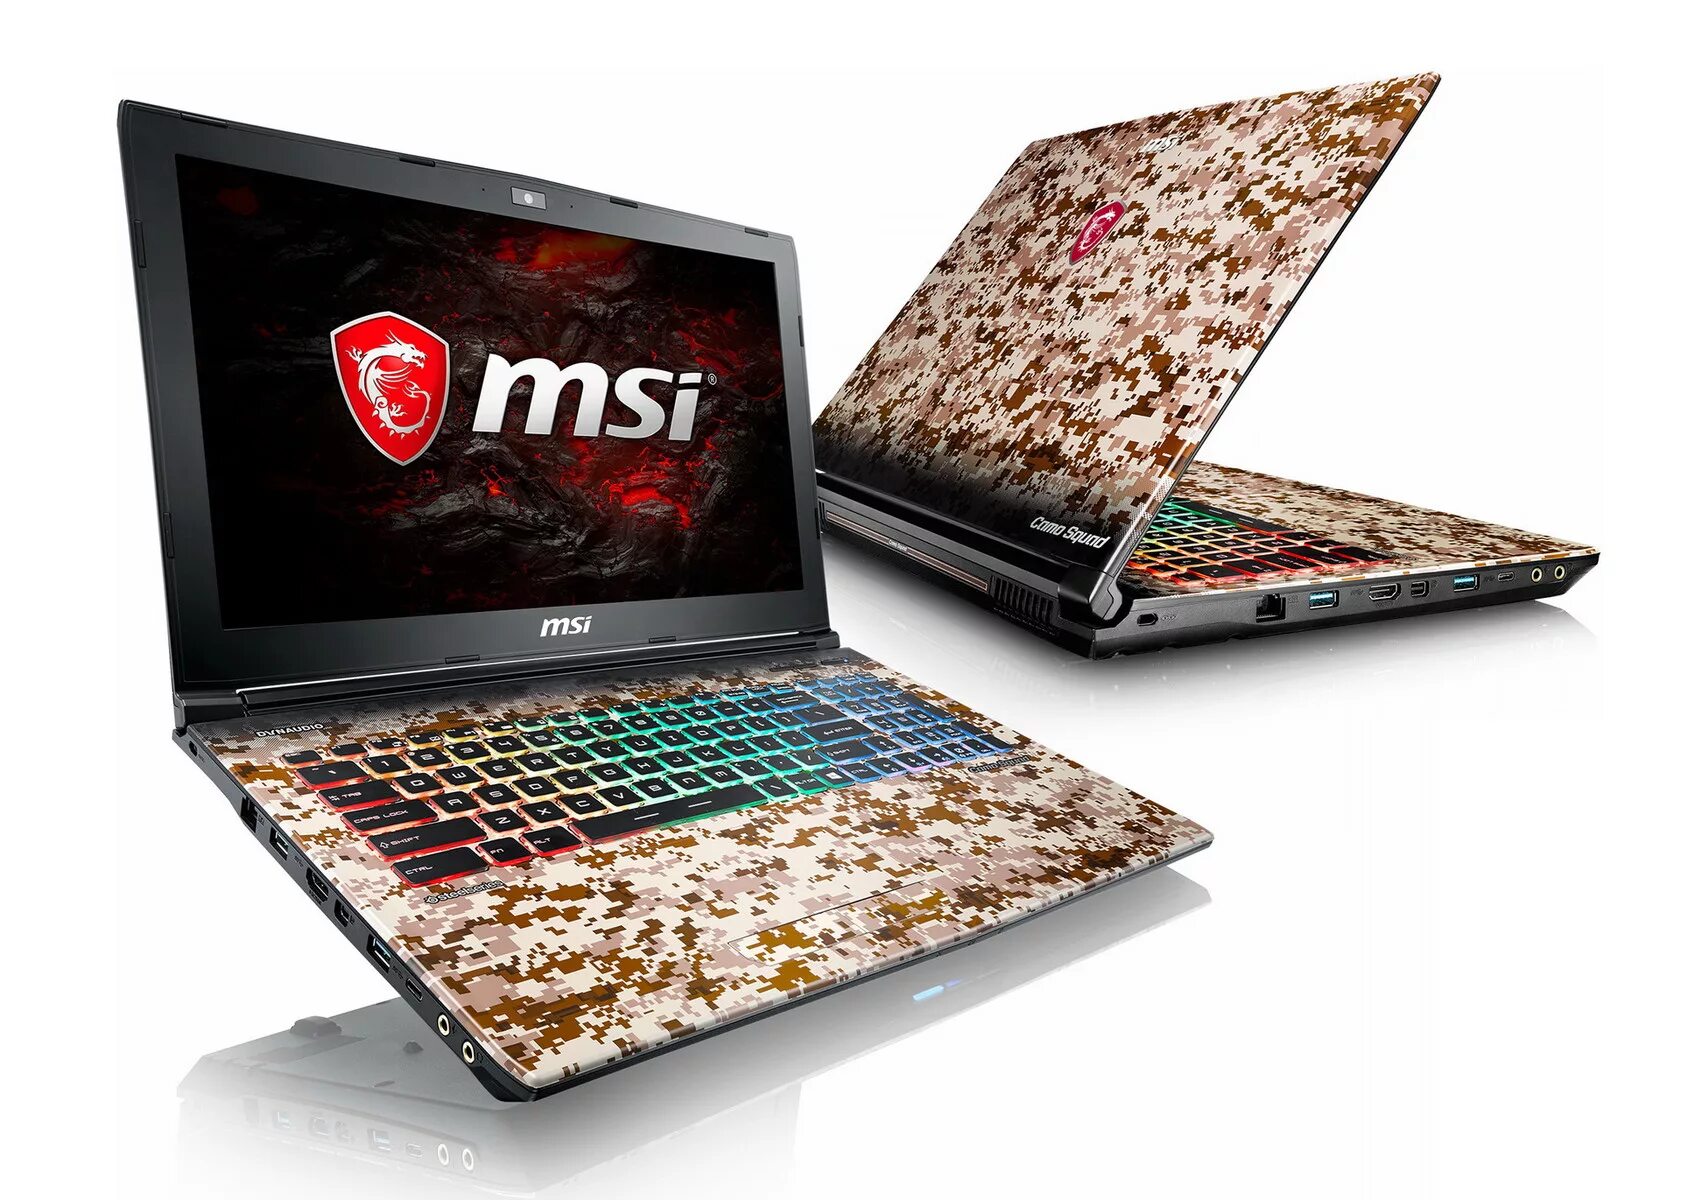 Ноутбук MSI ge62. Игровой ноутбук MSI 1050ti. MSI ge62 7re Camo Squad. Игровой ноутбук MSI 1050ti серебристый. Какой производитель ноутбуков лучше